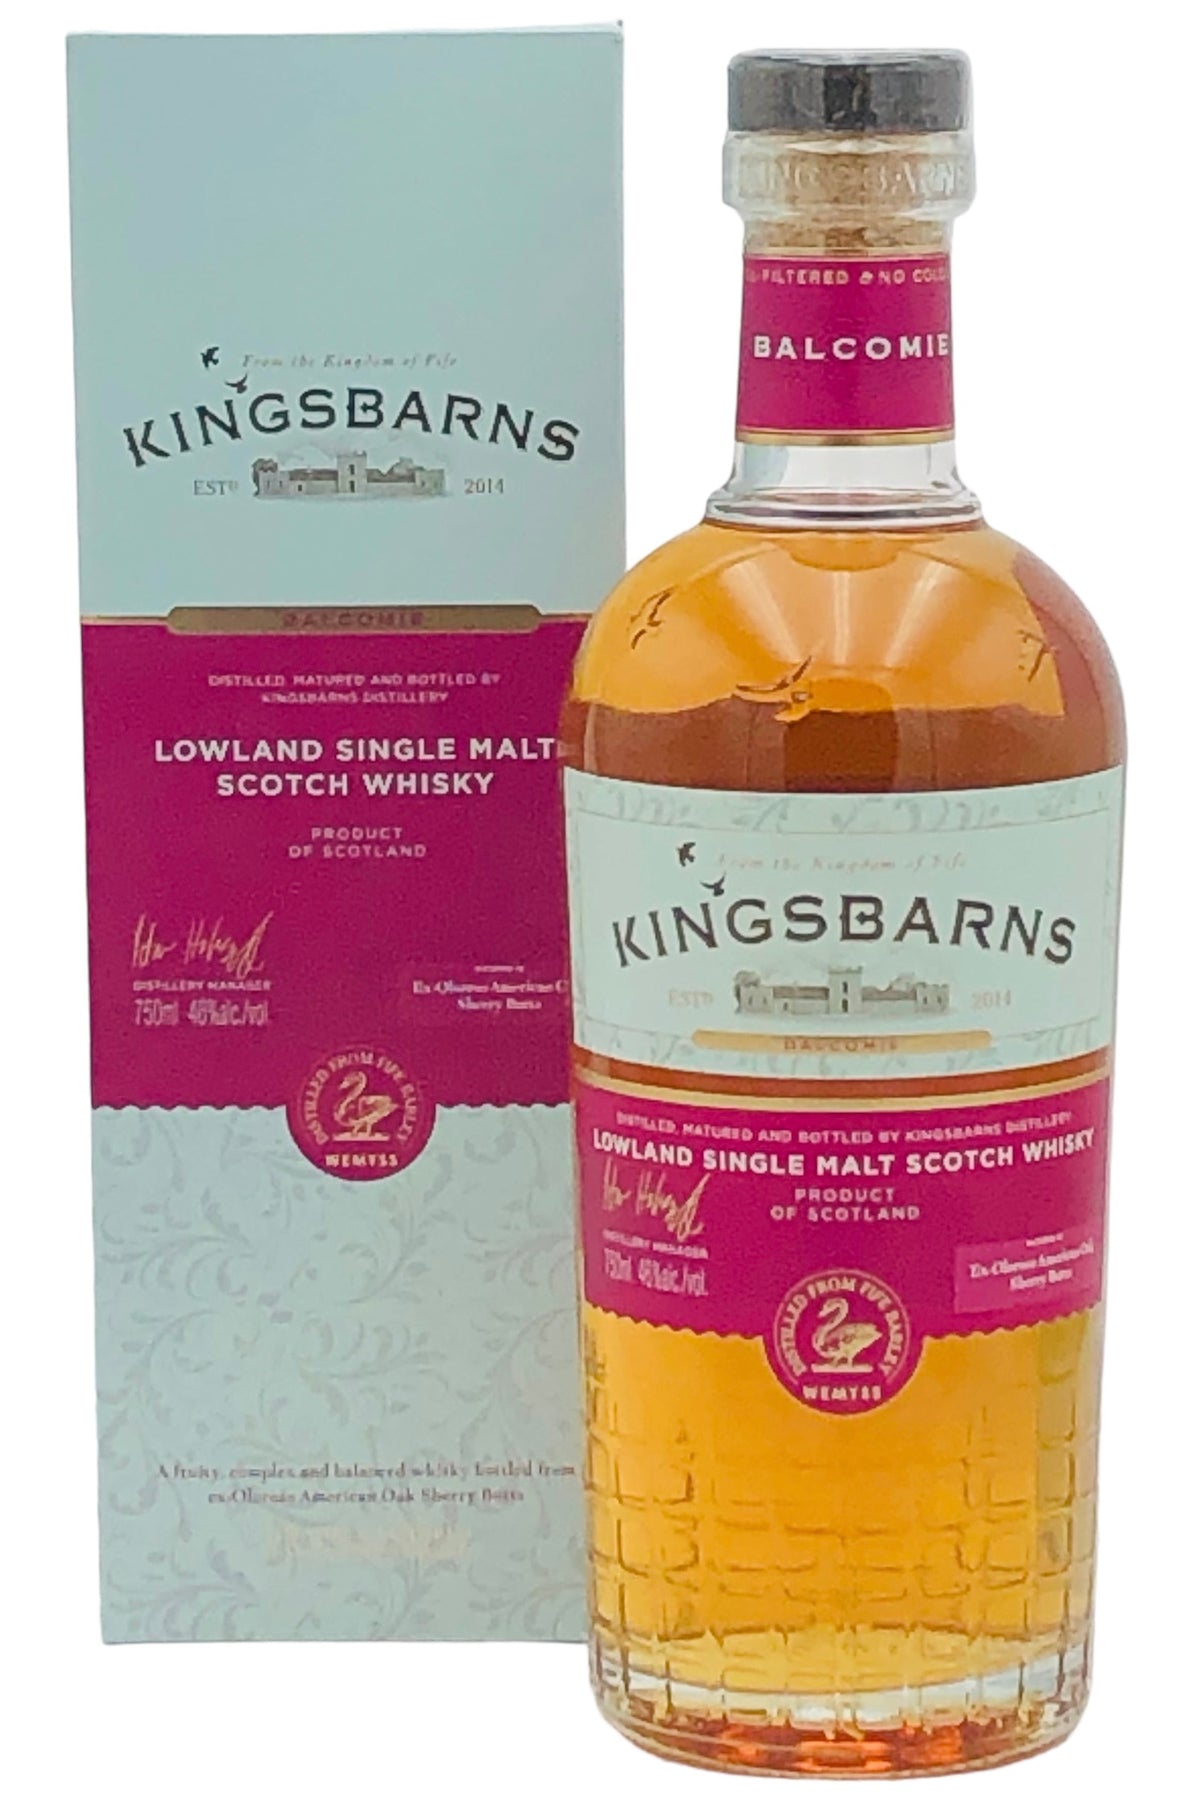 Kingsbarns Balcombe Sherry Cask Scotch Whisky